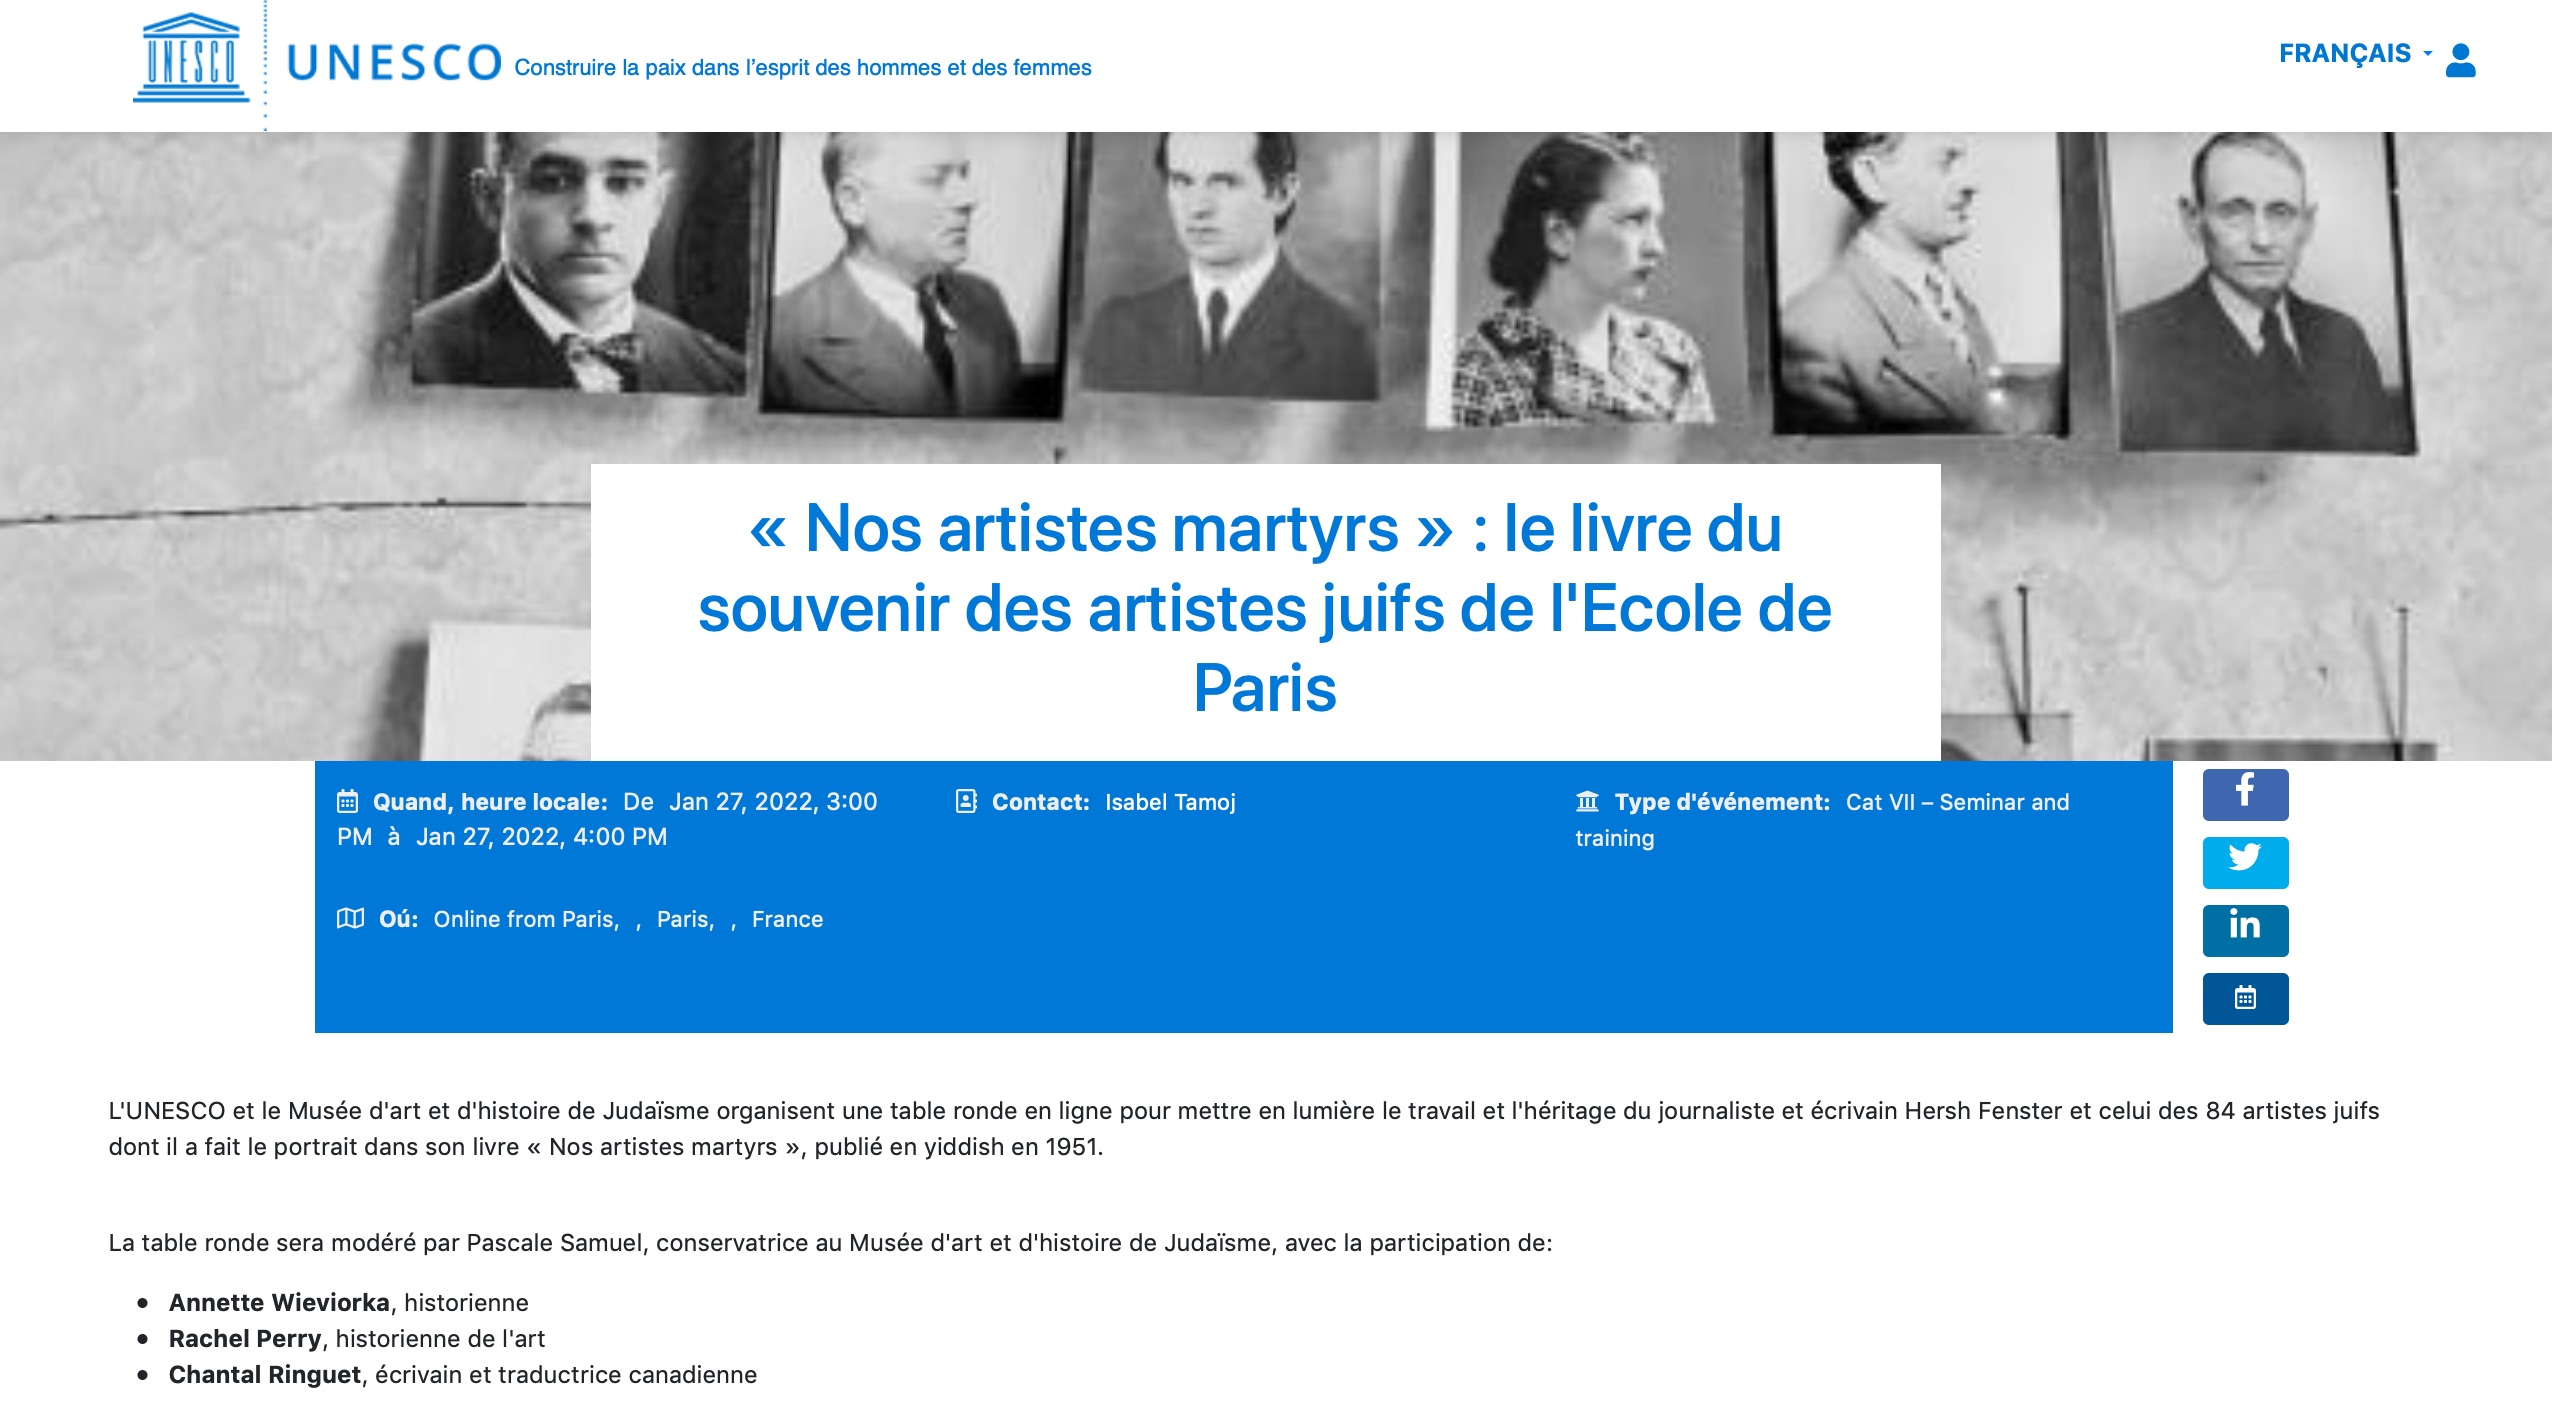 « Nos artistes martyrs » : le livre du souvenir des artistes juifs de l'Ecole de Paris.